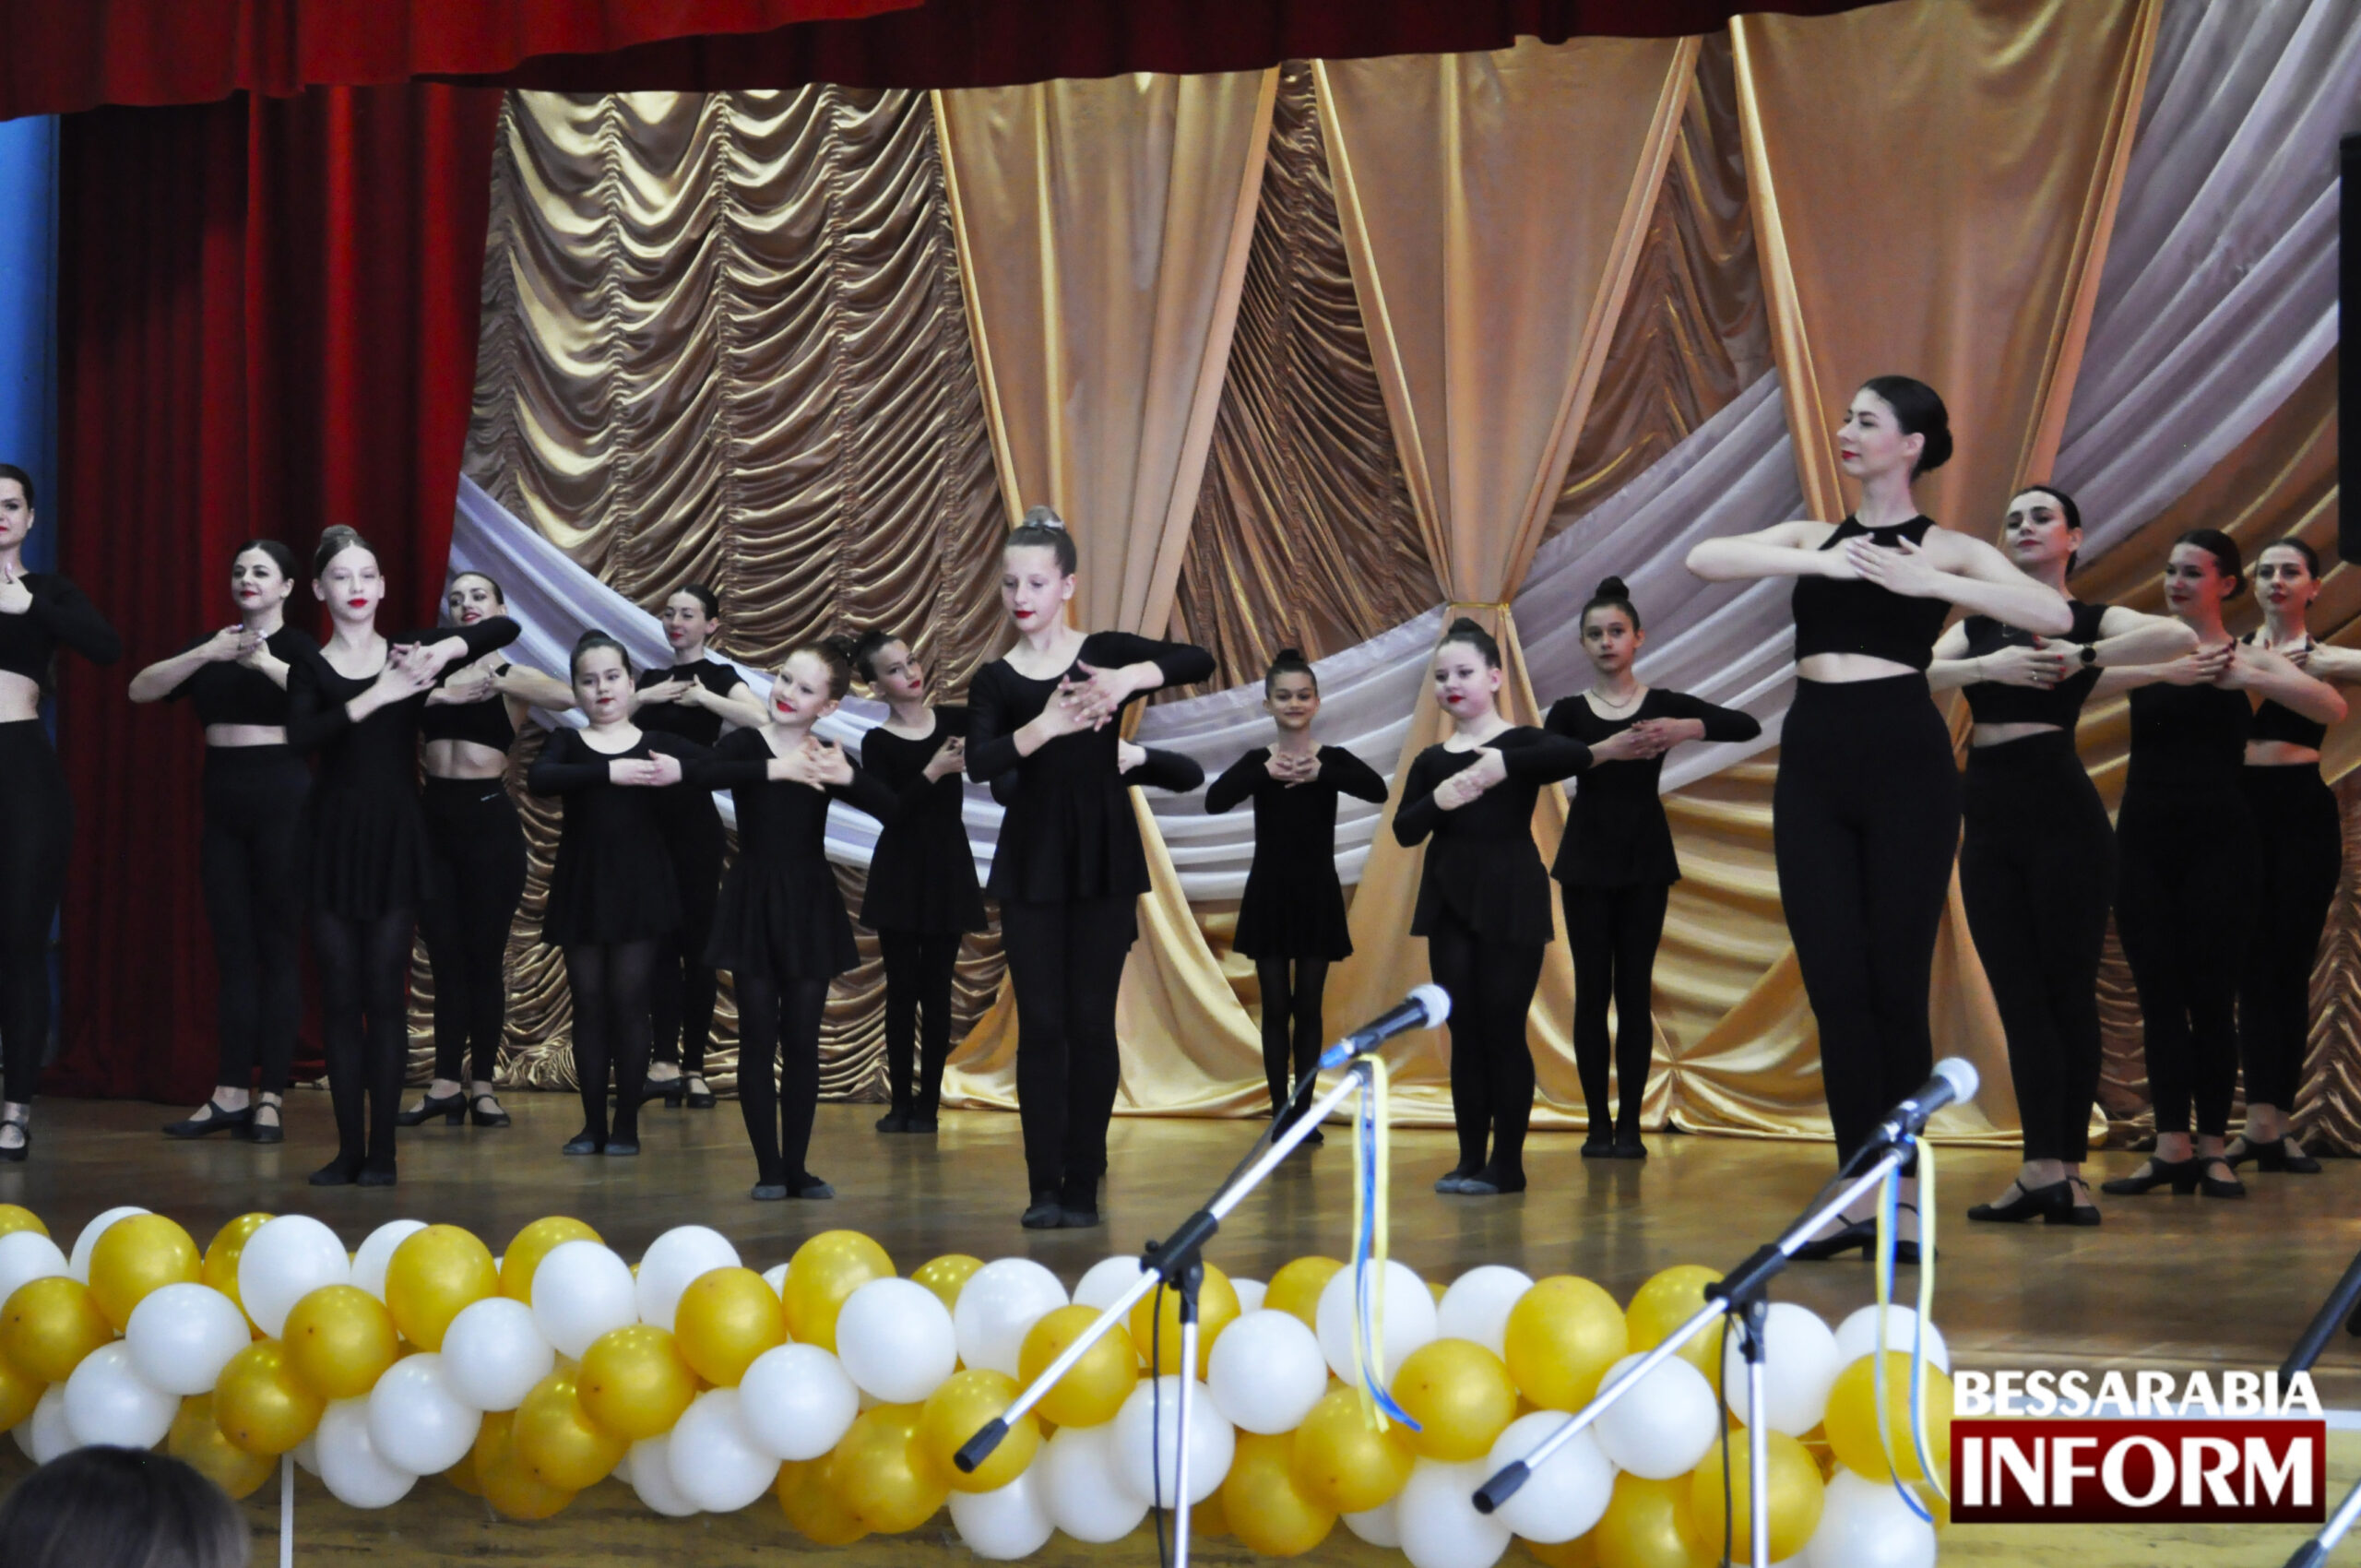 Ізмаїльський танцювальний колектив "Райдуга" відсвяткував поважний ювілей